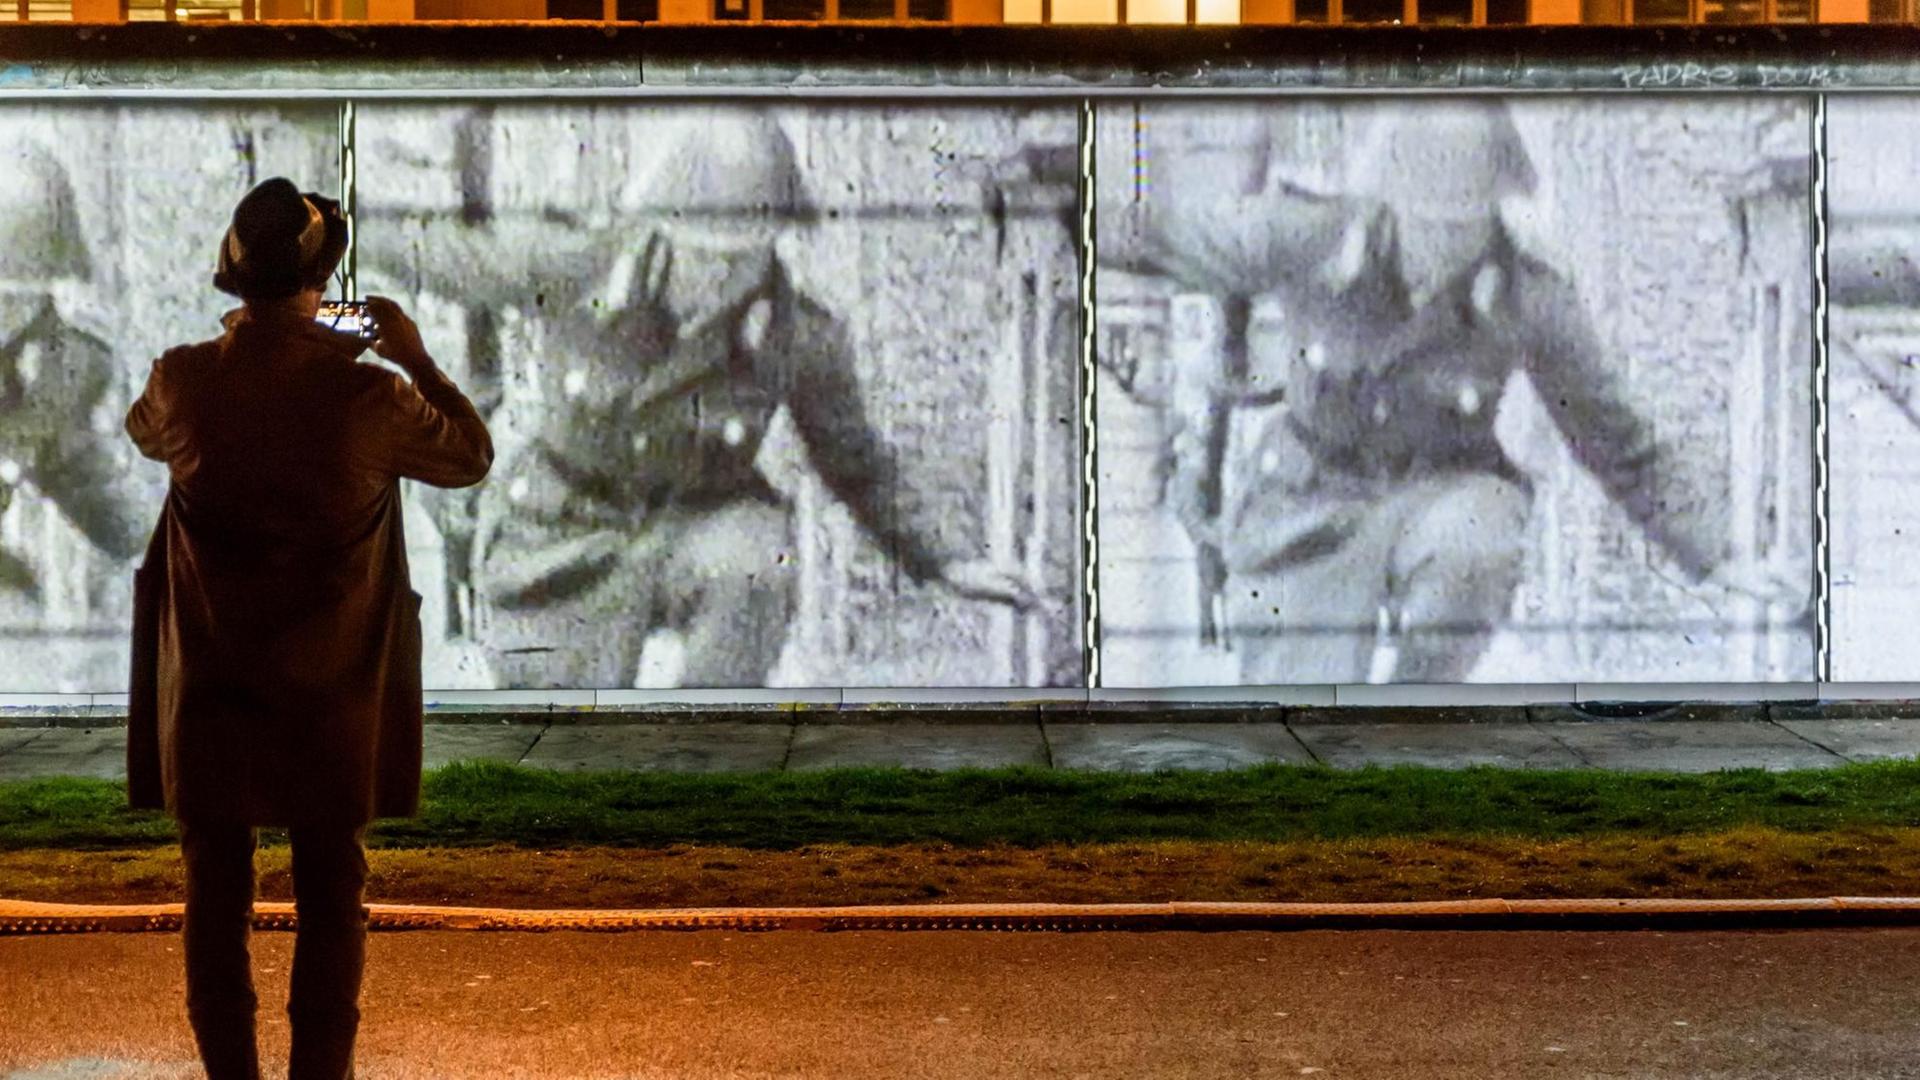 Open-Air-Ausstellung an der East Side Gallery zum 30-jährigen Jubiläum des Falls der Berliner Mauer. Ein Besucher fotografiert eine Projektion der berühmten Grenzflucht des DDR-Soldaten Conrad Schumann, der über einen Stacheldraht springt und nach West-Berlin entkommt.